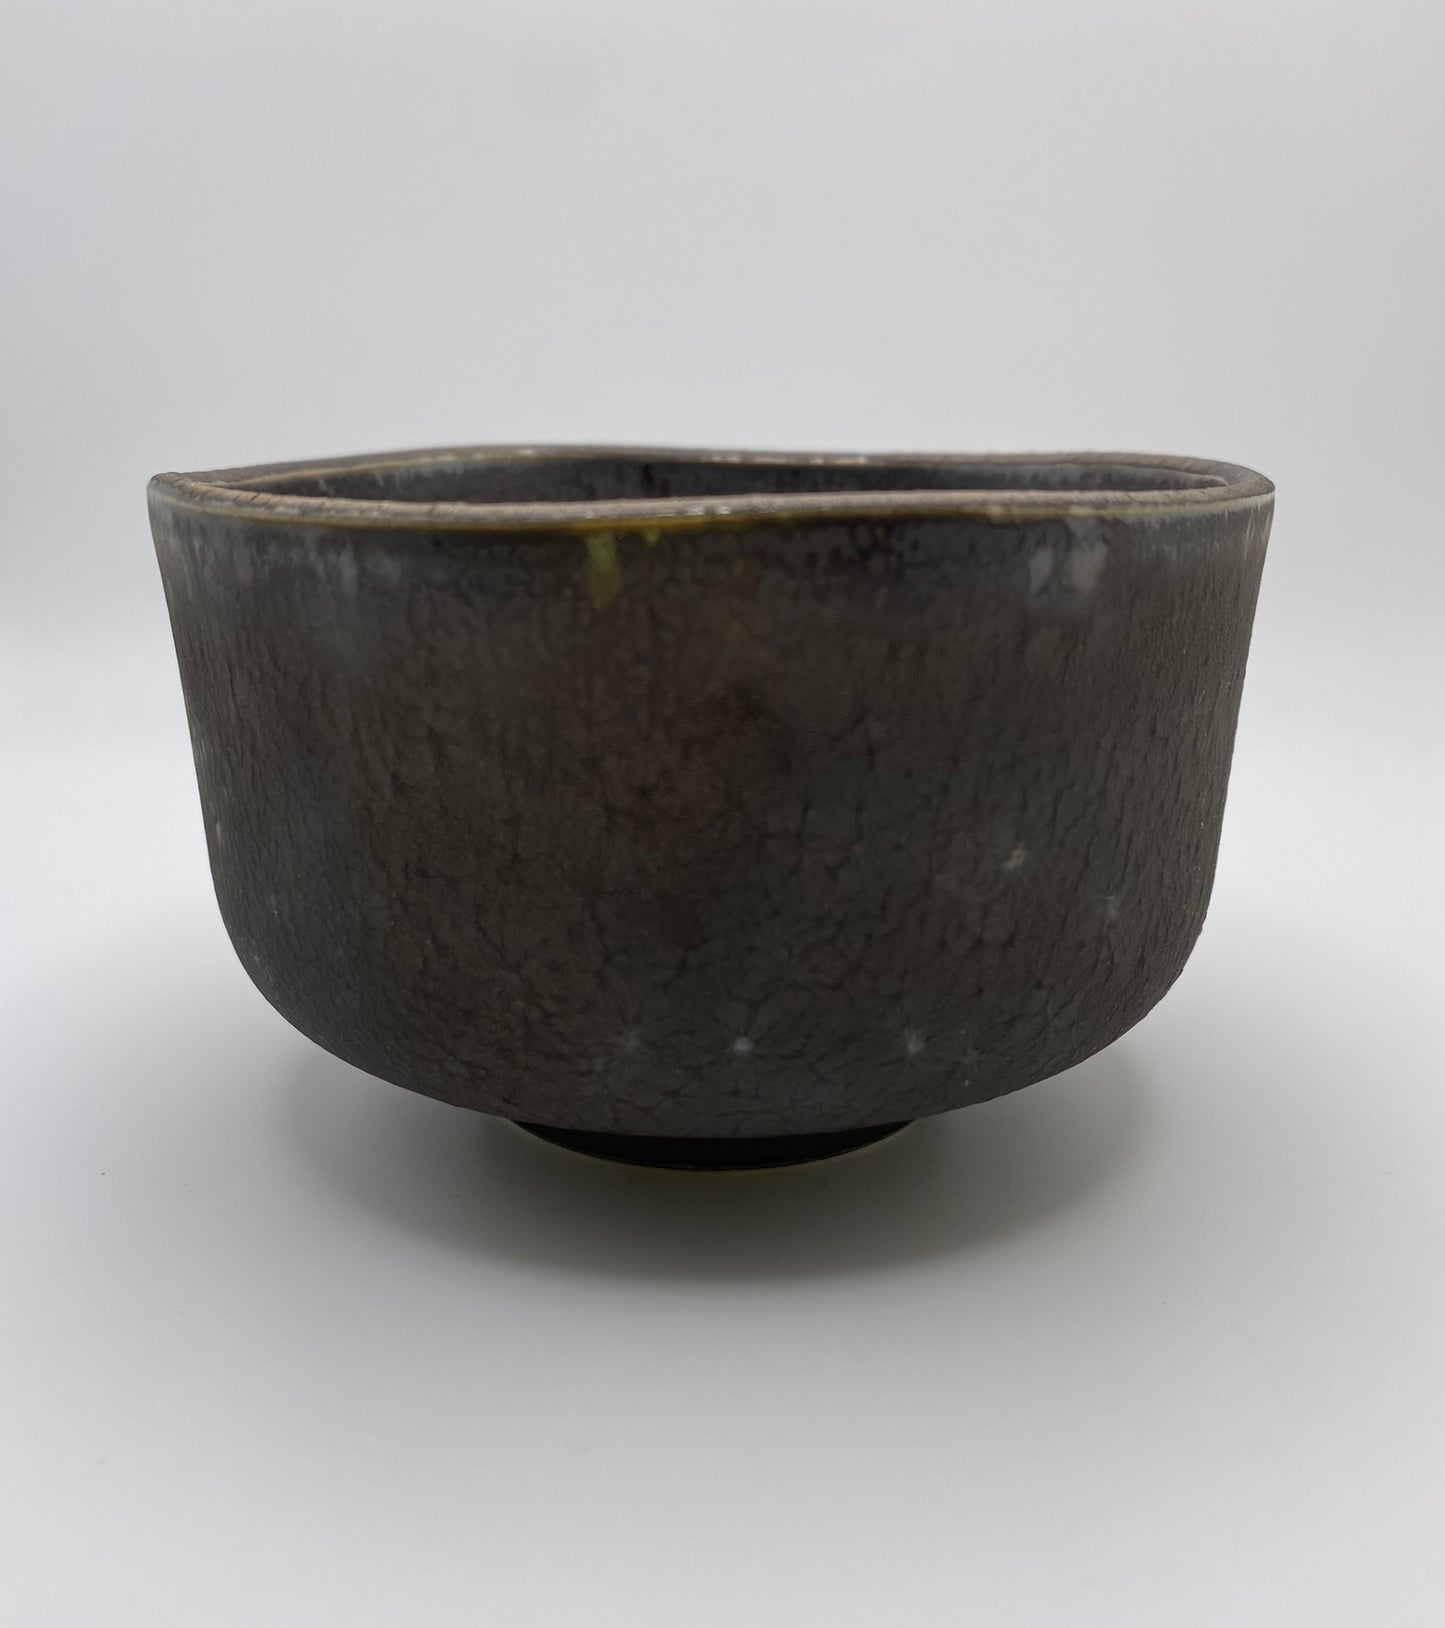 Brushed Metallic Glaze Handmade Chawan Matcha Bowl (Small)